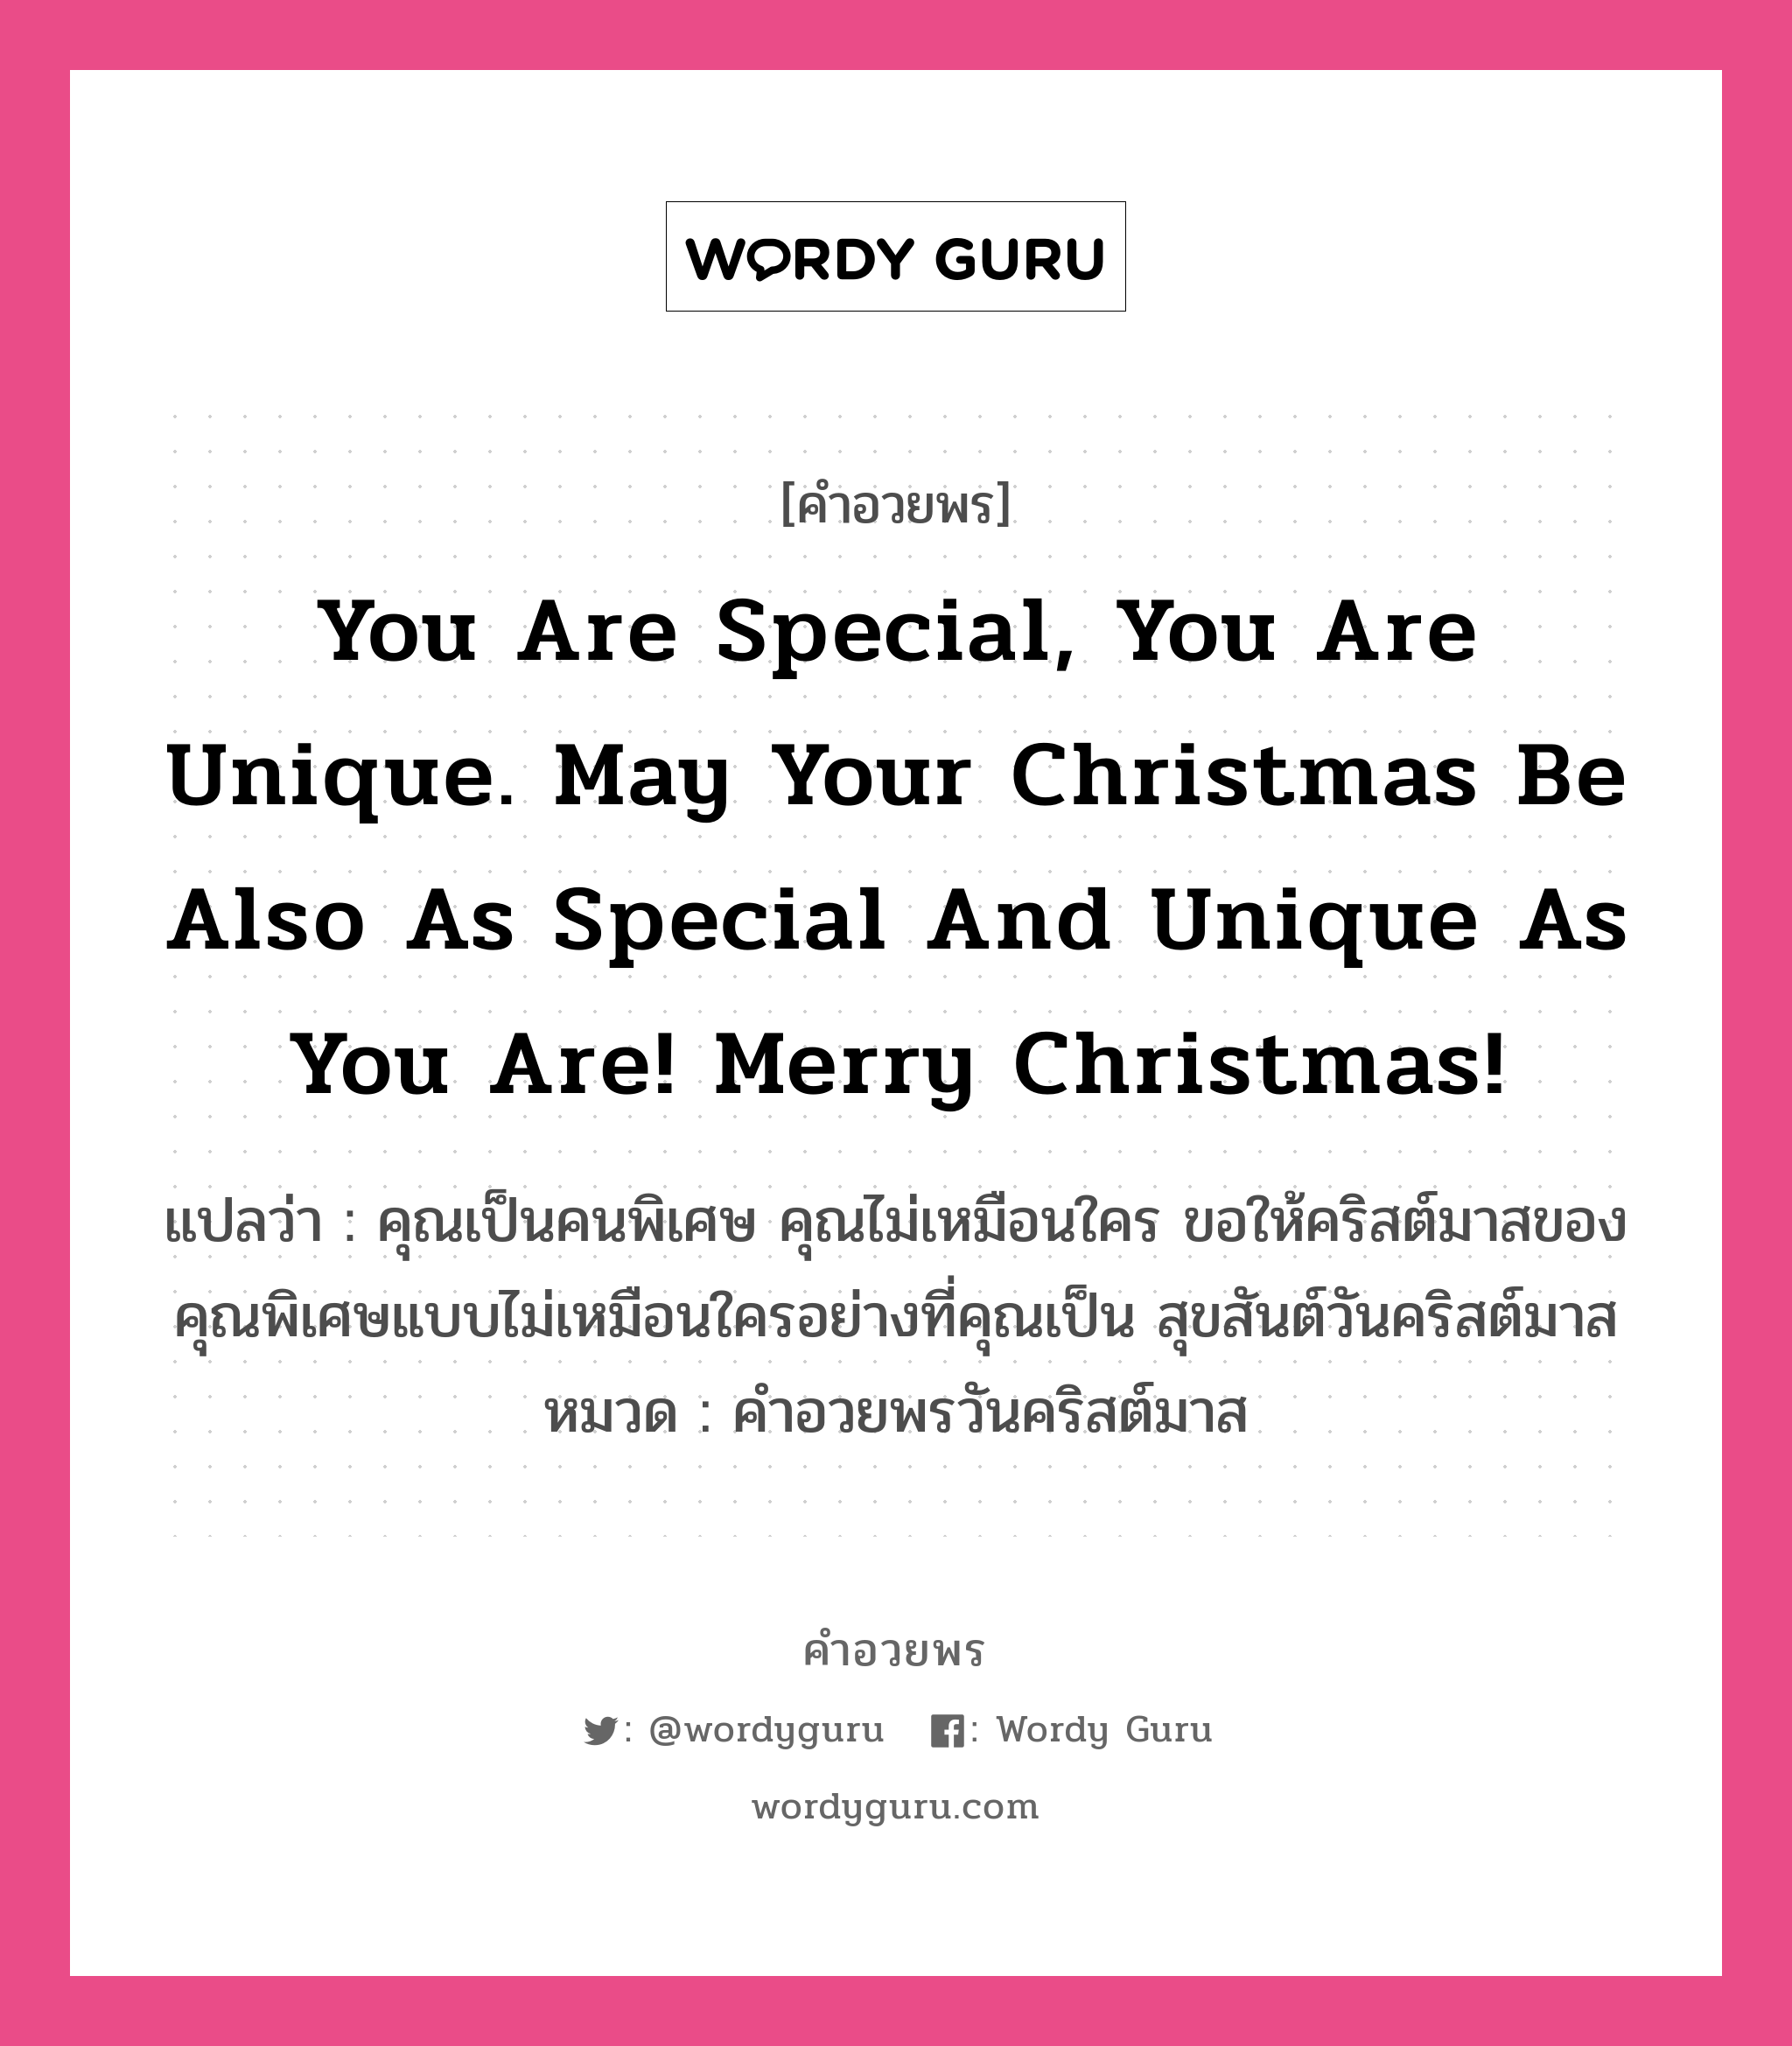 คำอวยพร You are special, you are unique. May your Christmas be also as special and unique as you are! Merry Christmas! คืออะไร?, แปลว่า คุณเป็นคนพิเศษ คุณไม่เหมือนใคร ขอให้คริสต์มาสของคุณพิเศษแบบไม่เหมือนใครอย่างที่คุณเป็น สุขสันต์วันคริสต์มาส หมวด คำอวยพรวันคริสต์มาส หมวด คำอวยพรวันคริสต์มาส